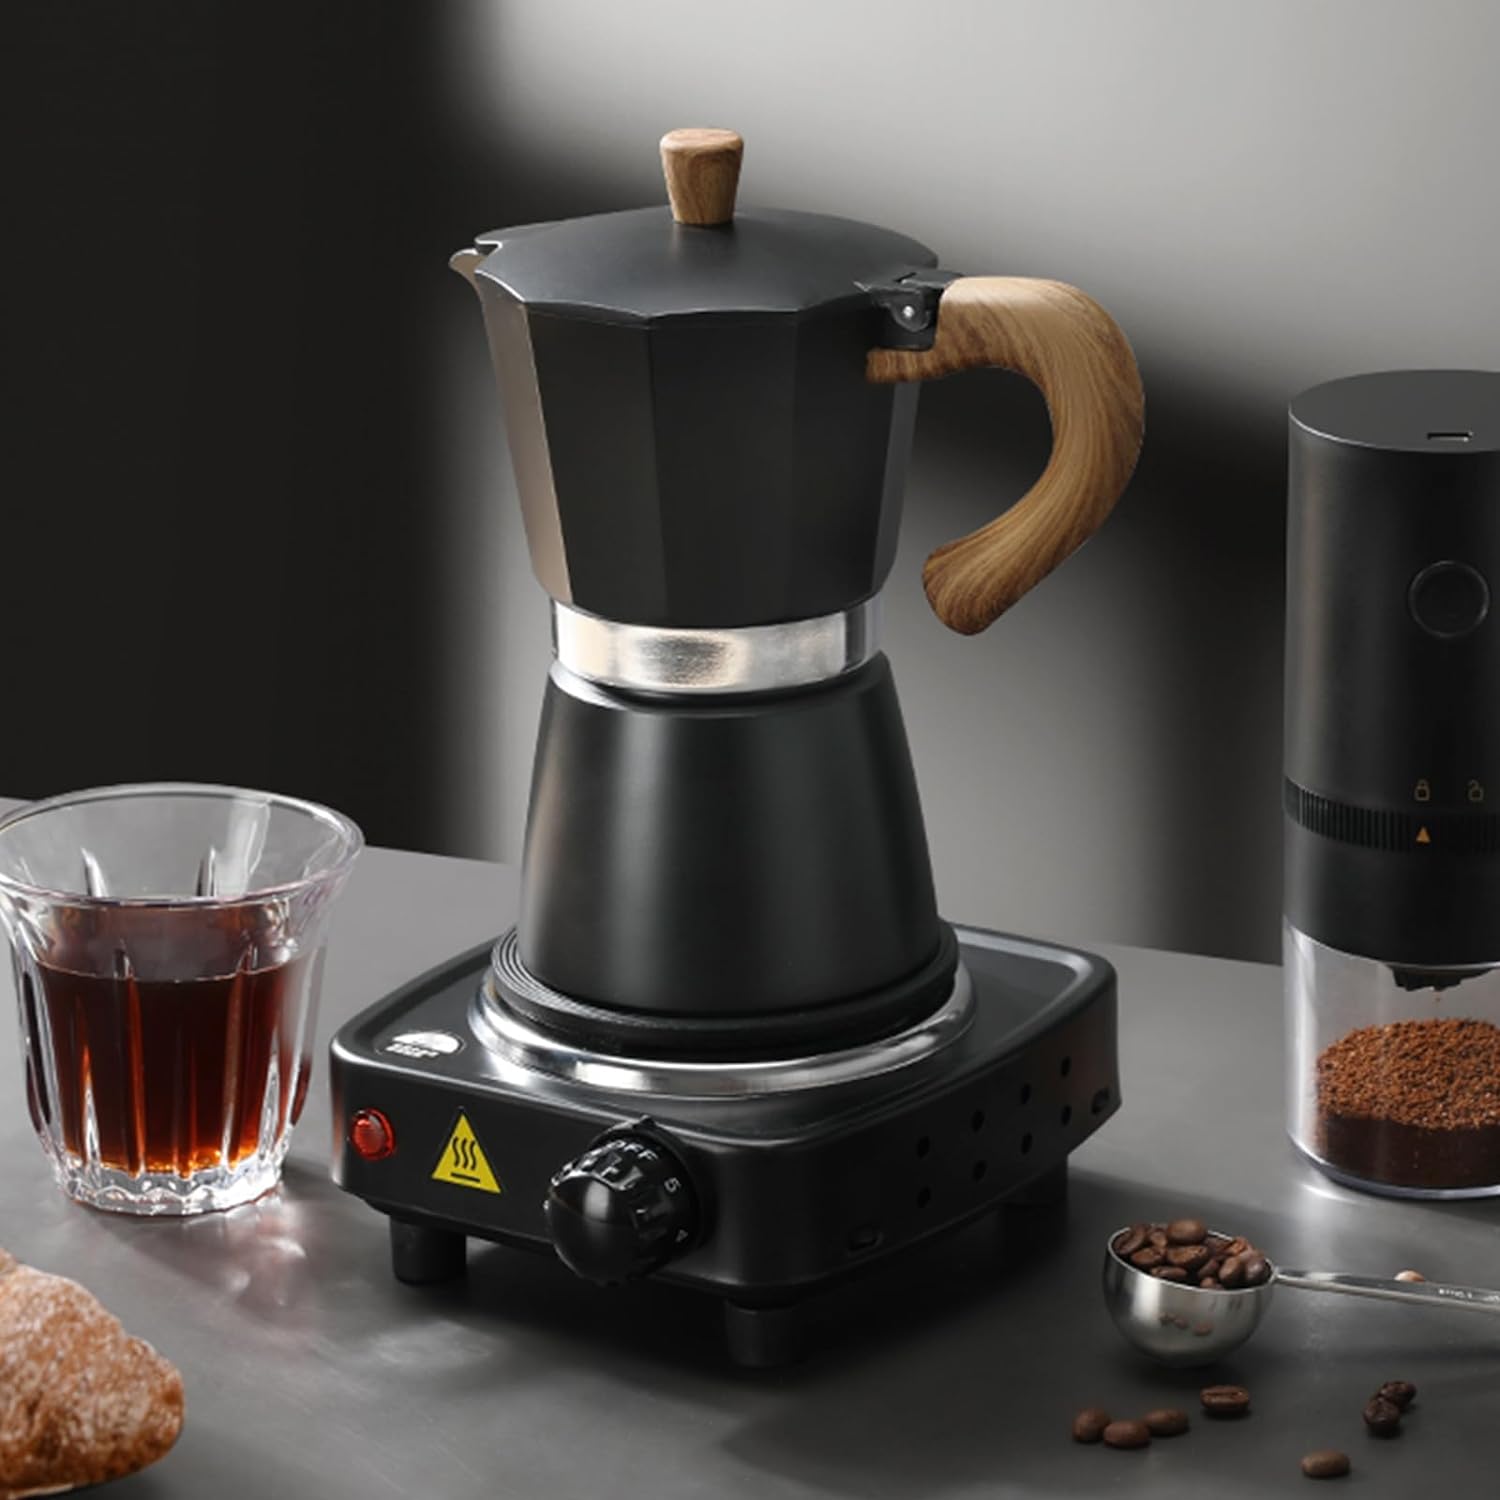 MORDEN MS Moka Pot, Stovetop Espresso Maker 6 Espresso Cup - 10 oz Italian Coffee Maker, Manual Cuban Coffee Percolator Machine Italian Espresso Greca Coffee Maker - Black